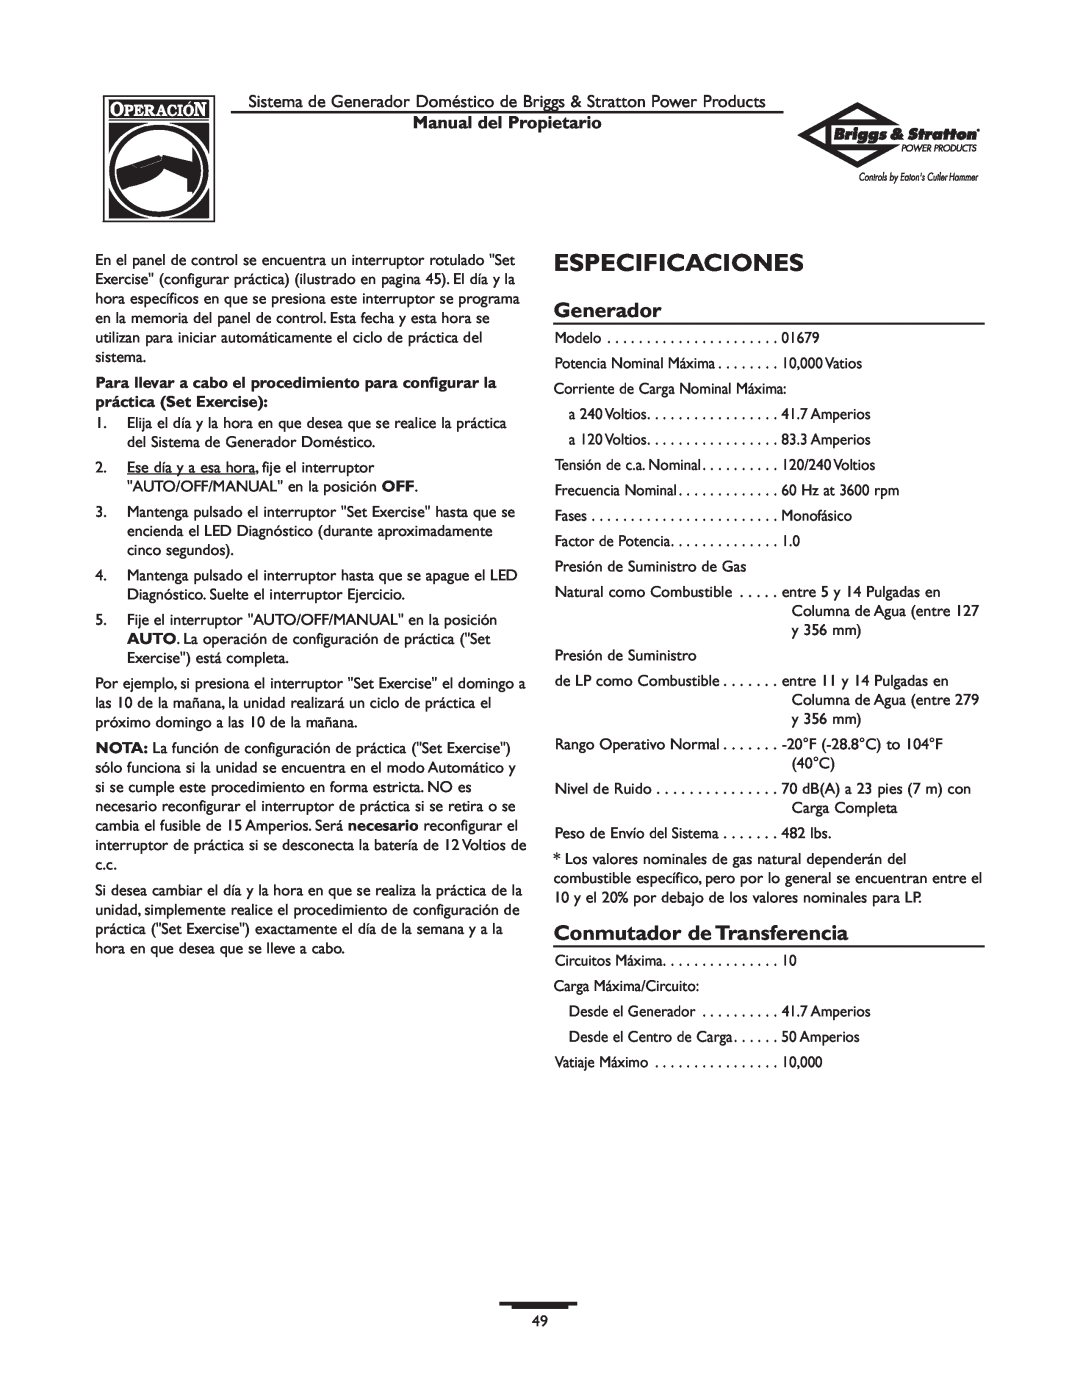 Briggs & Stratton 1679-0 owner manual Especificaciones, Generador, Conmutador de Transferencia, Manual del Propietario 